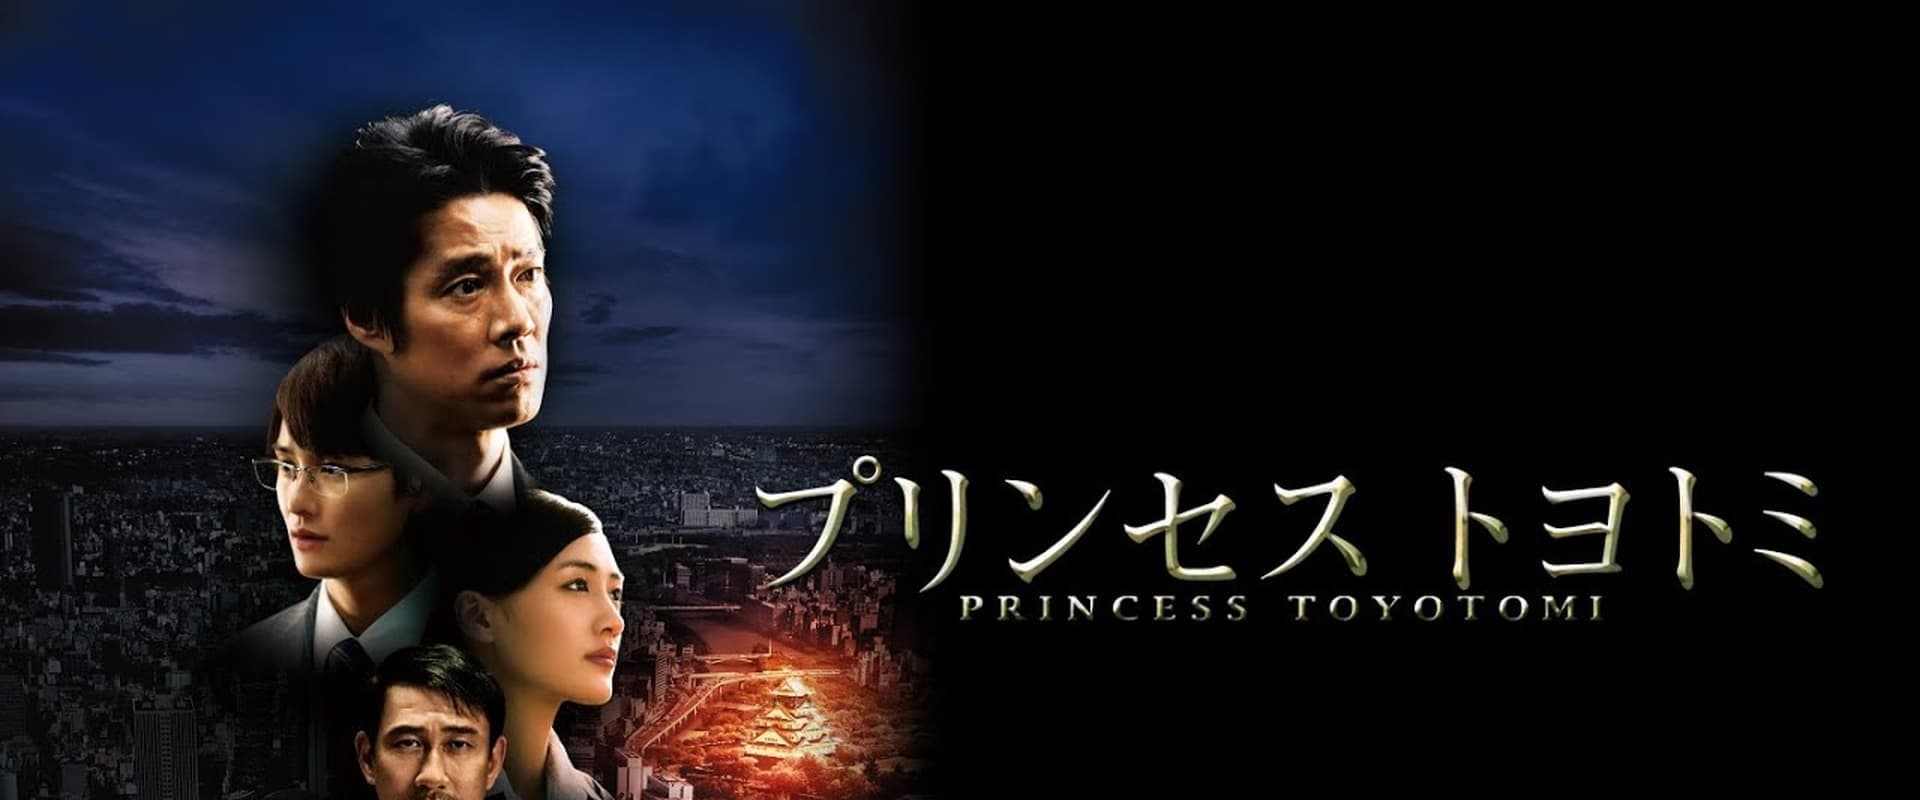 Princess Toyotomi